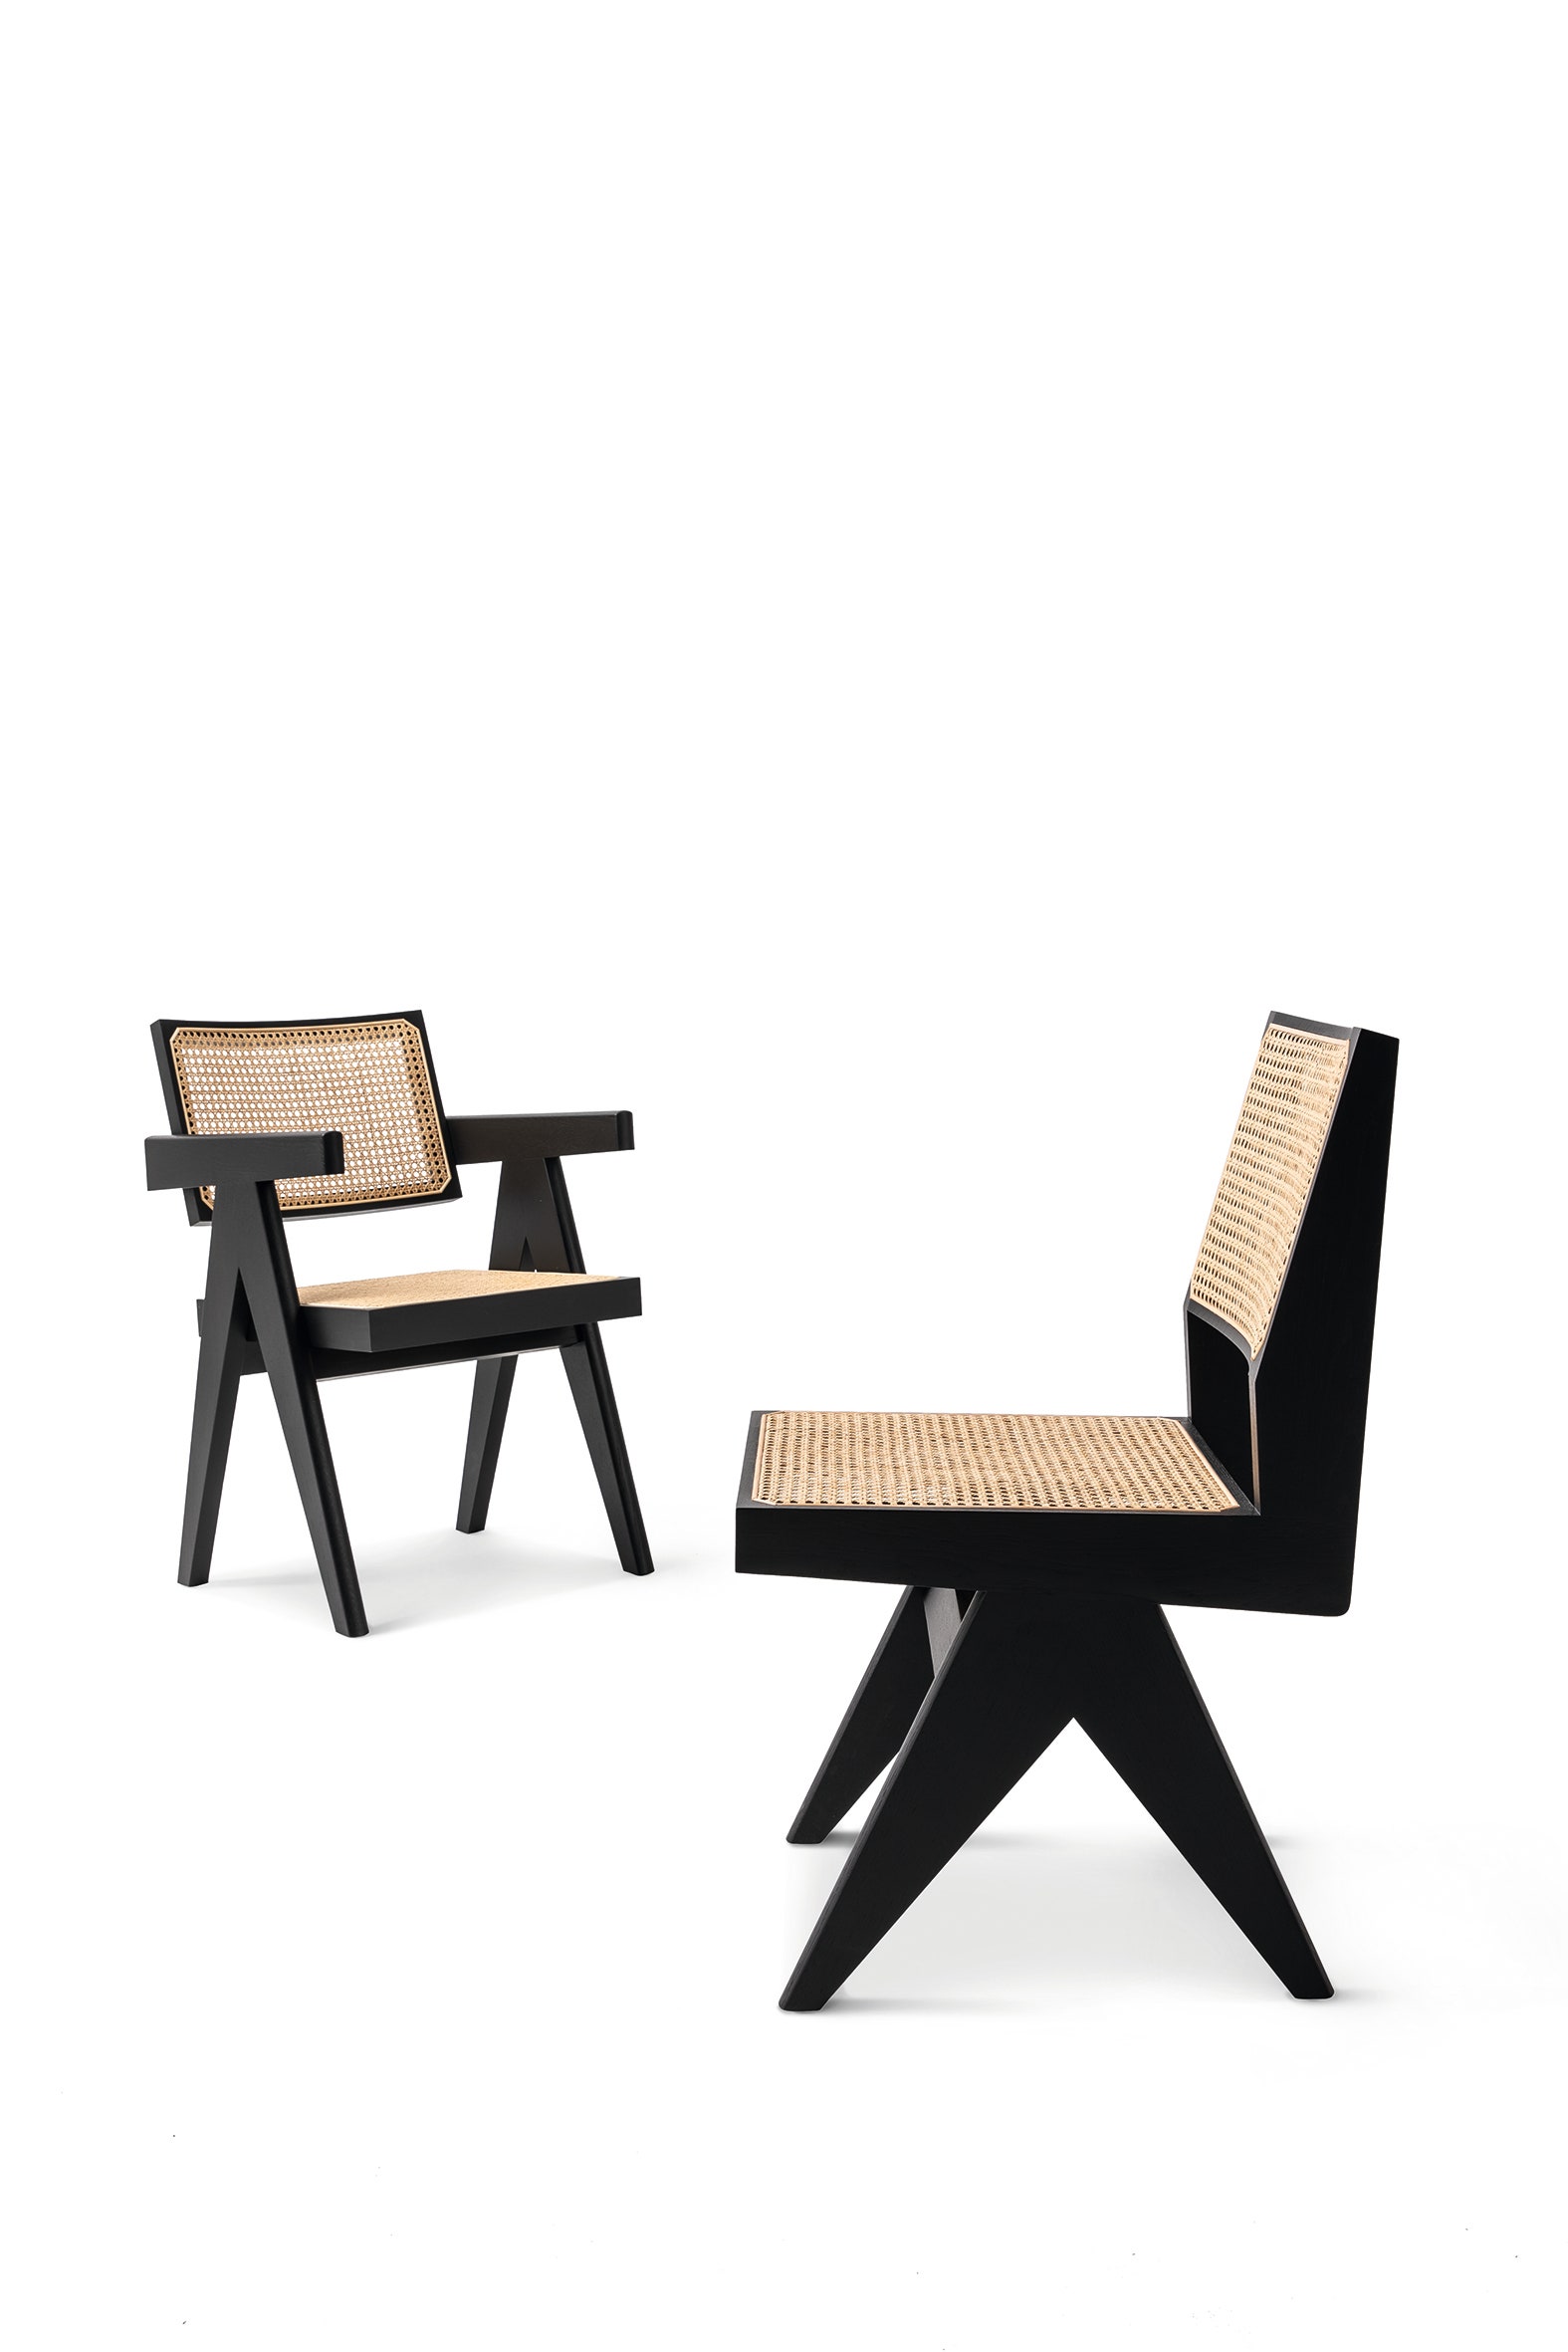 Объект желания офисное кресло Capitol Complex по дизайну Пьера Жаннере